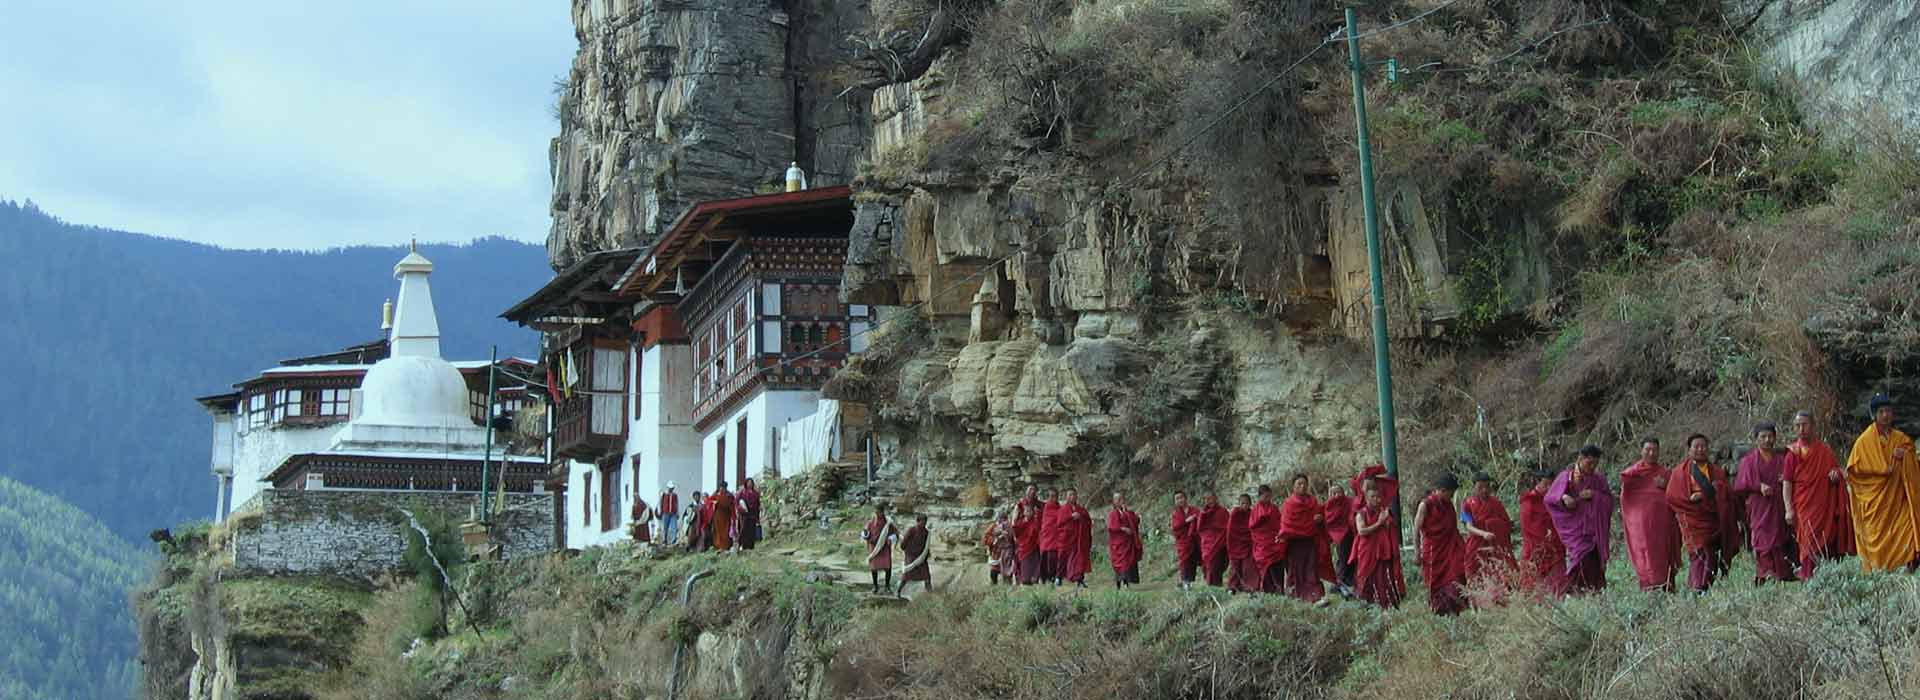 bhutanese monks walking in a file